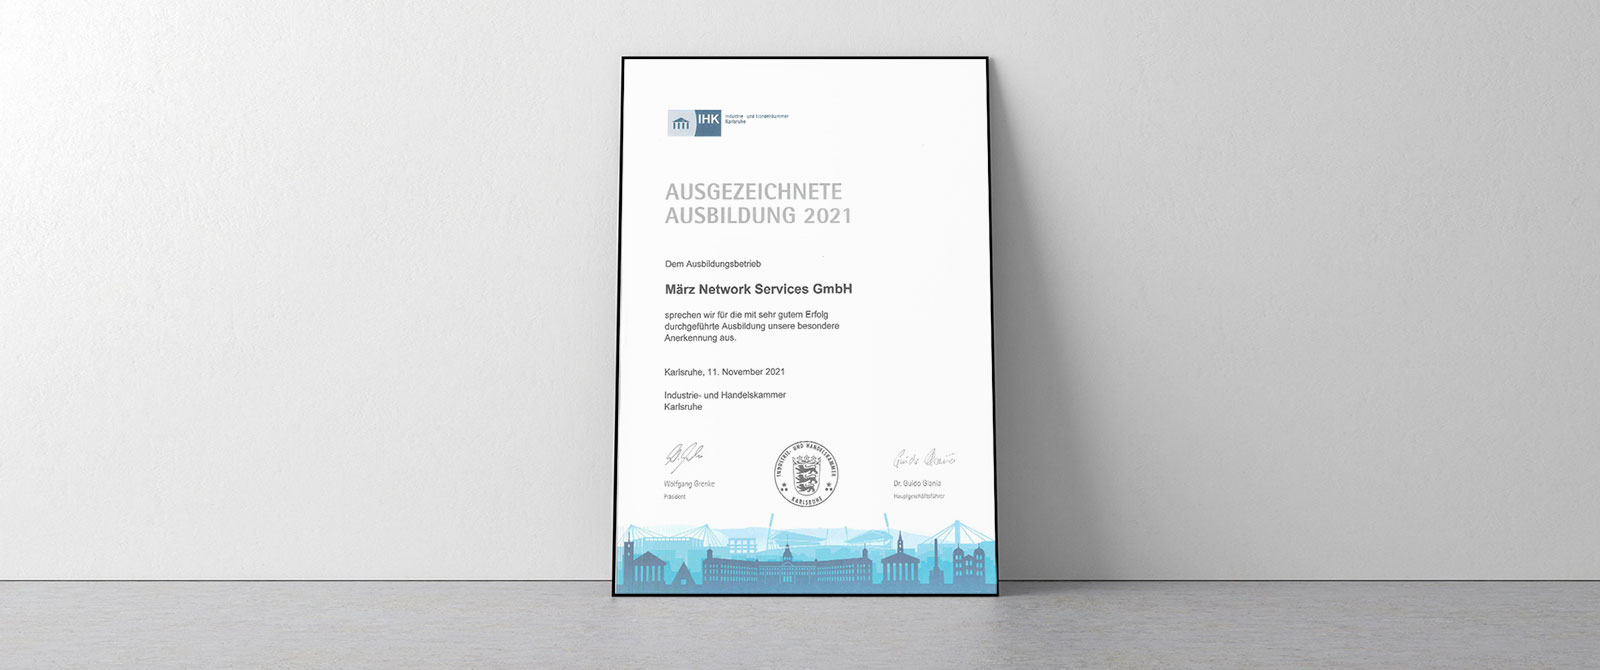 März Network Services GmbH erhält von der IHK Karlsruhe die Auszeichnung „Ausgezeichnete Ausbildung 2021“